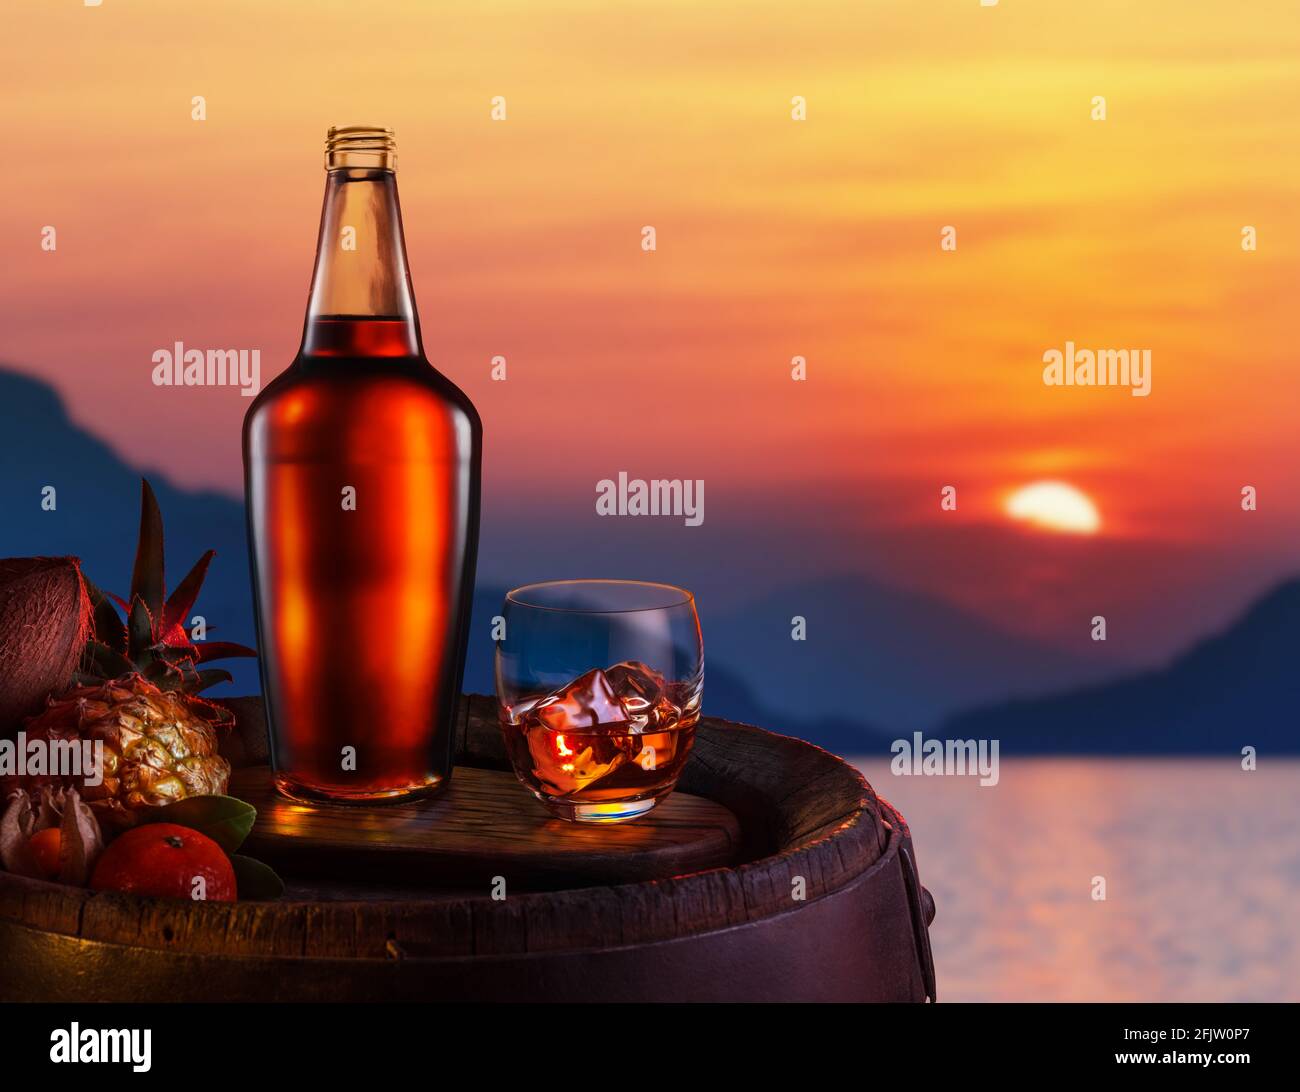 Verre de rhum glacé foncé et fruits tropicaux sur un tonneau de chêne. Magnifique coucher de soleil rouge sur la mer. Banque D'Images